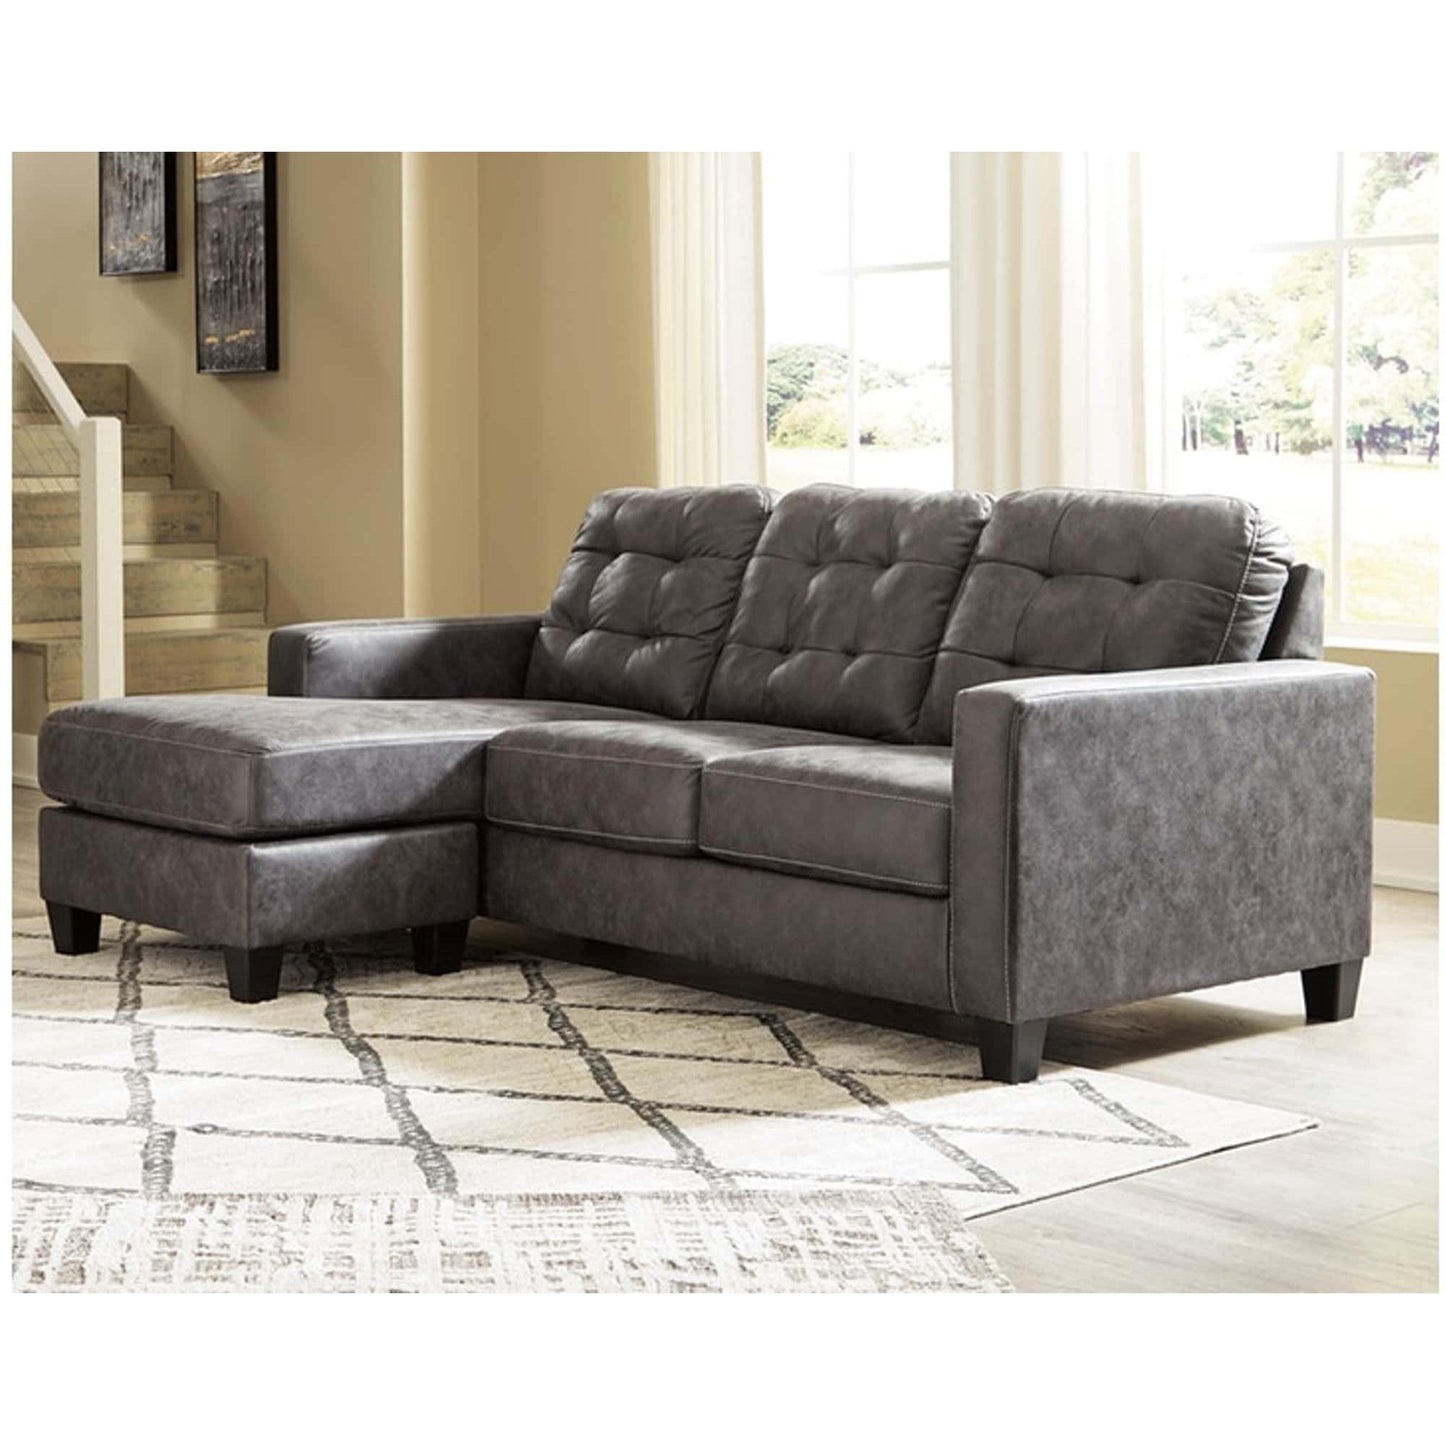 Venaldi Sofa Chaise in Gray